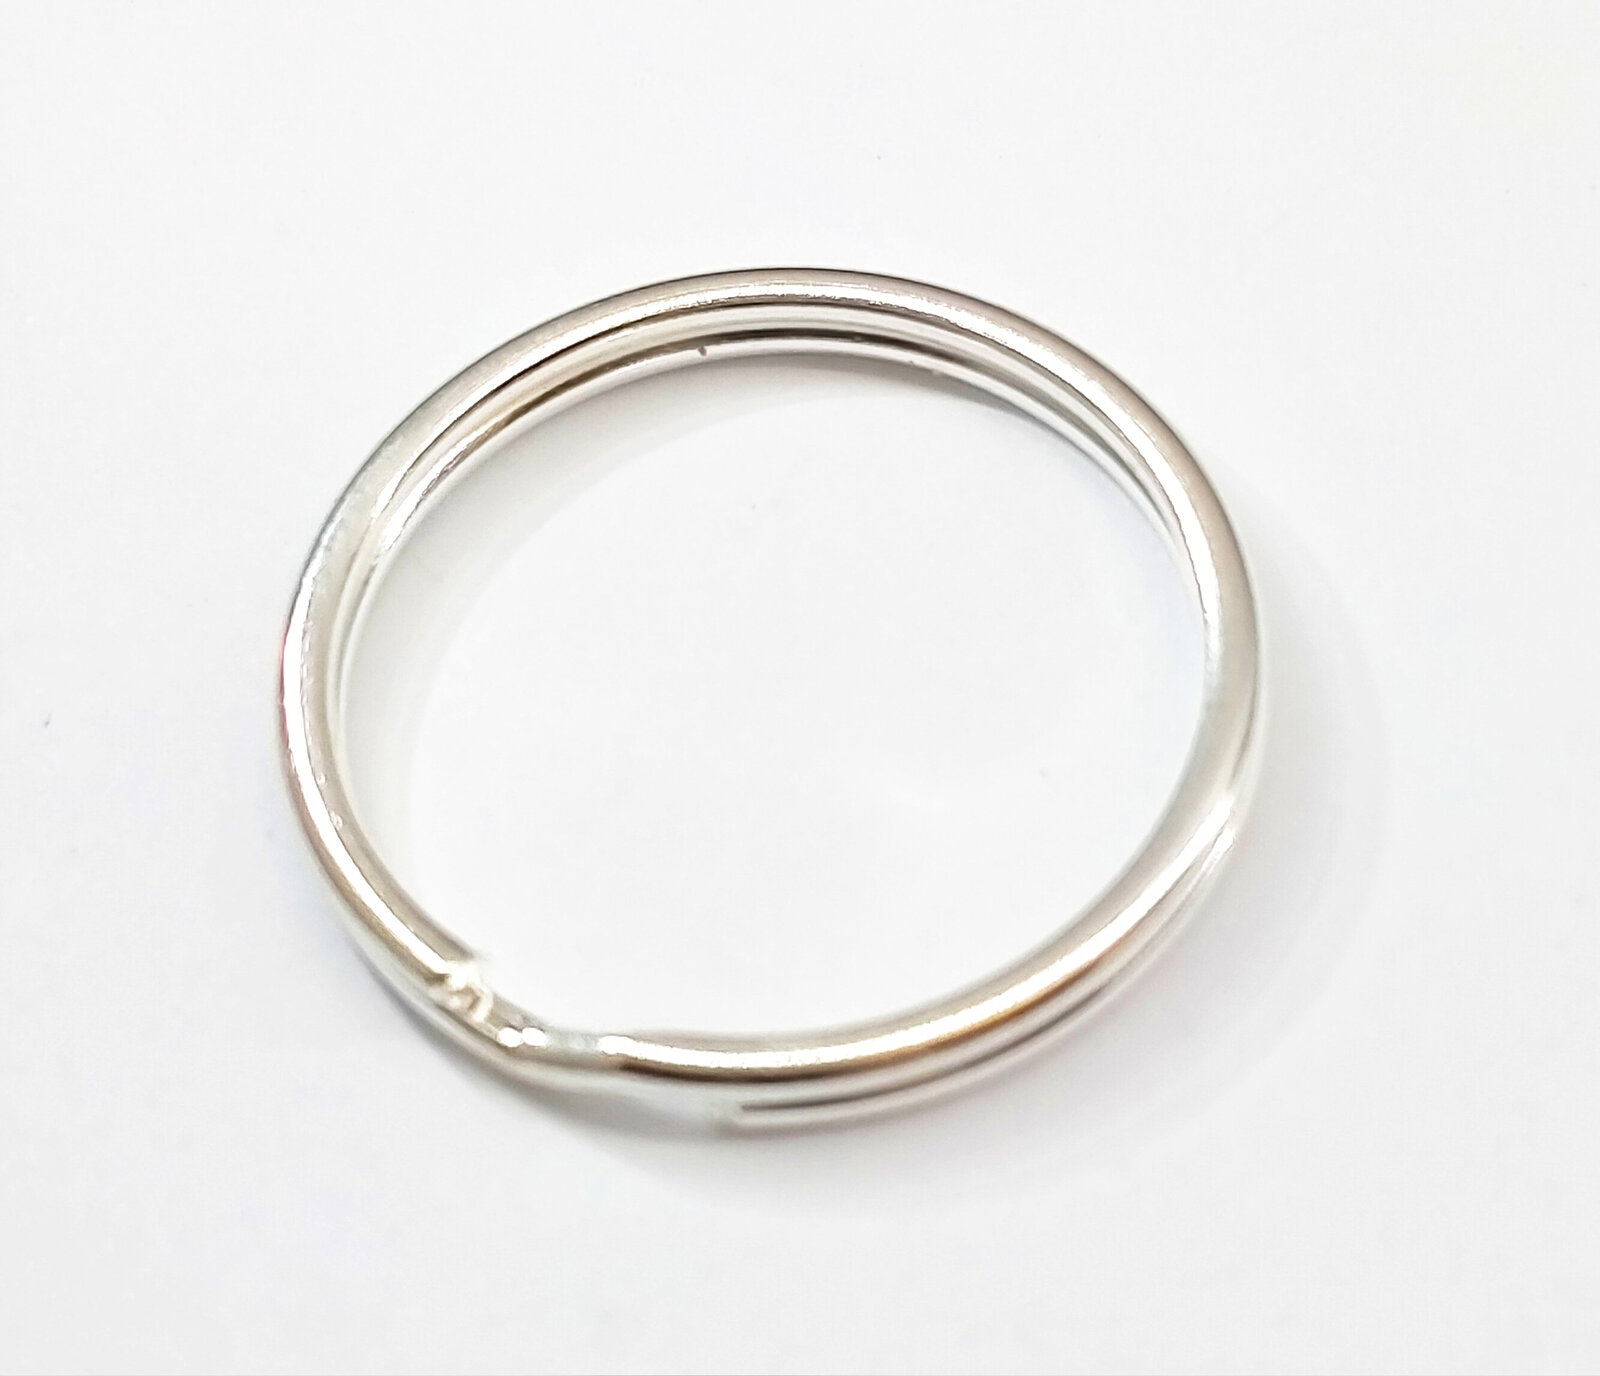 10 x 25mm Antique Silver Large Split Ring for Keys